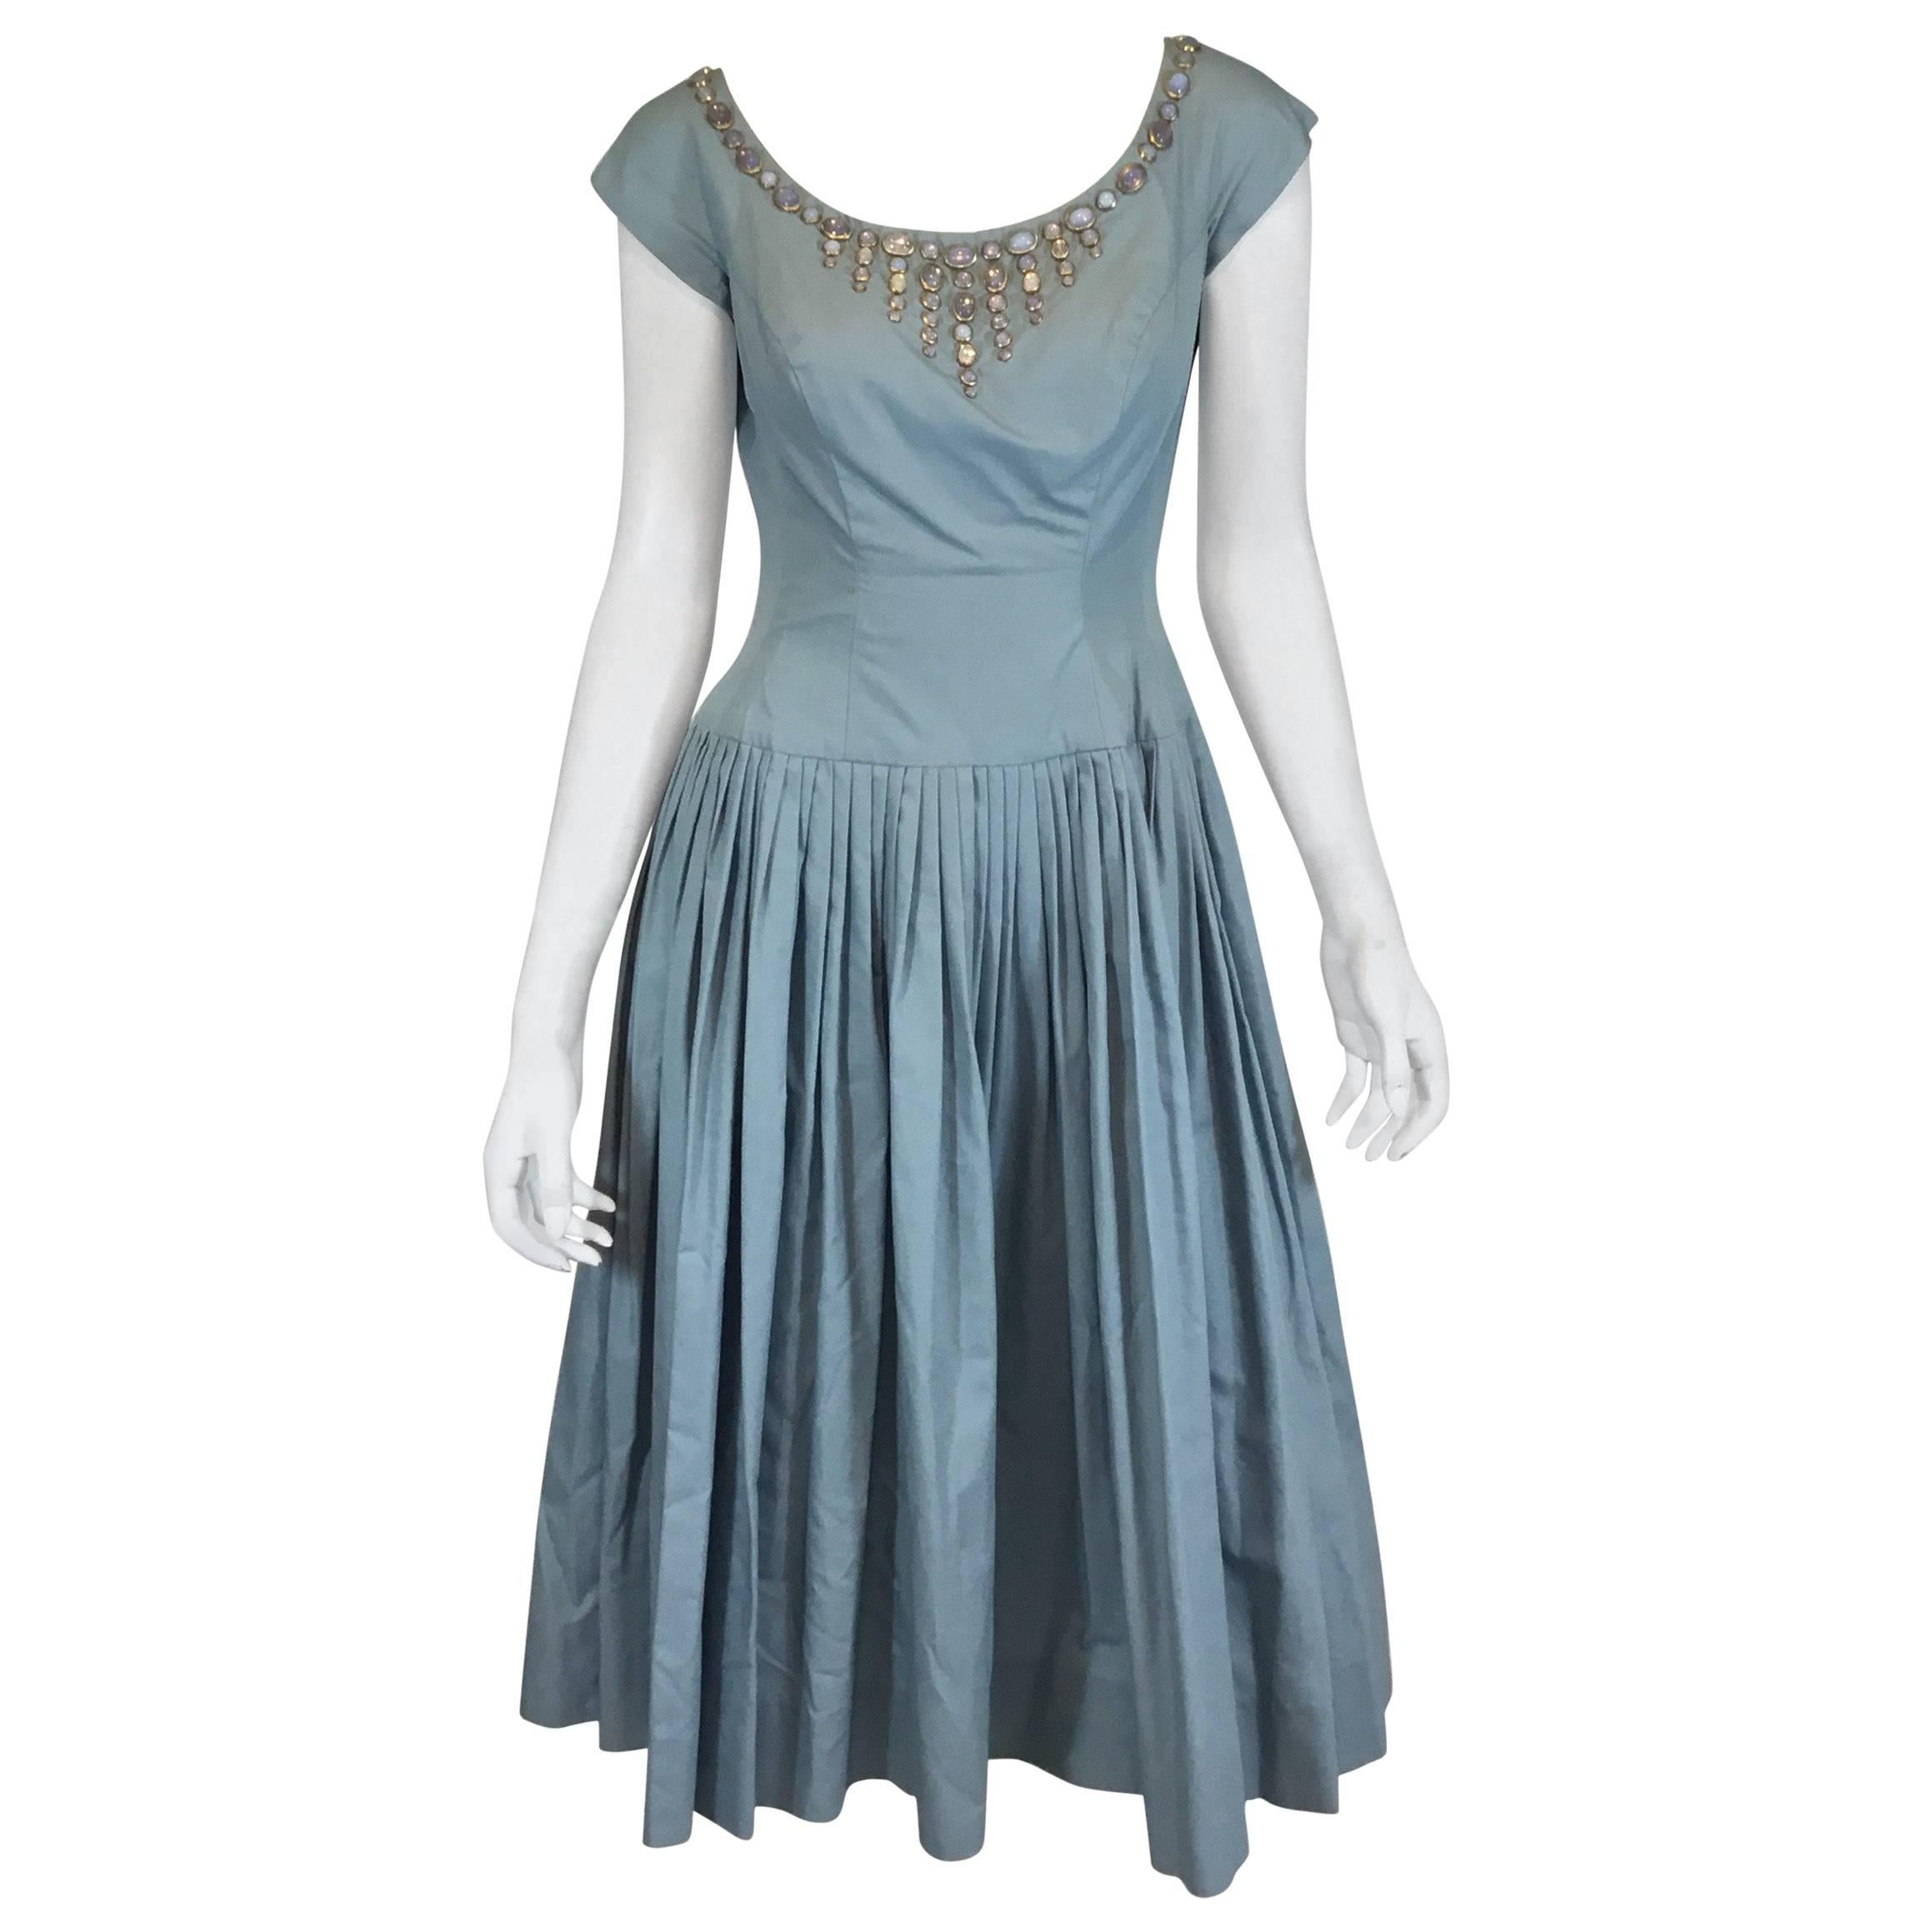 Vintage 1950’s I. Magnin Dress with Jewel Cabochon Embellished Neckline